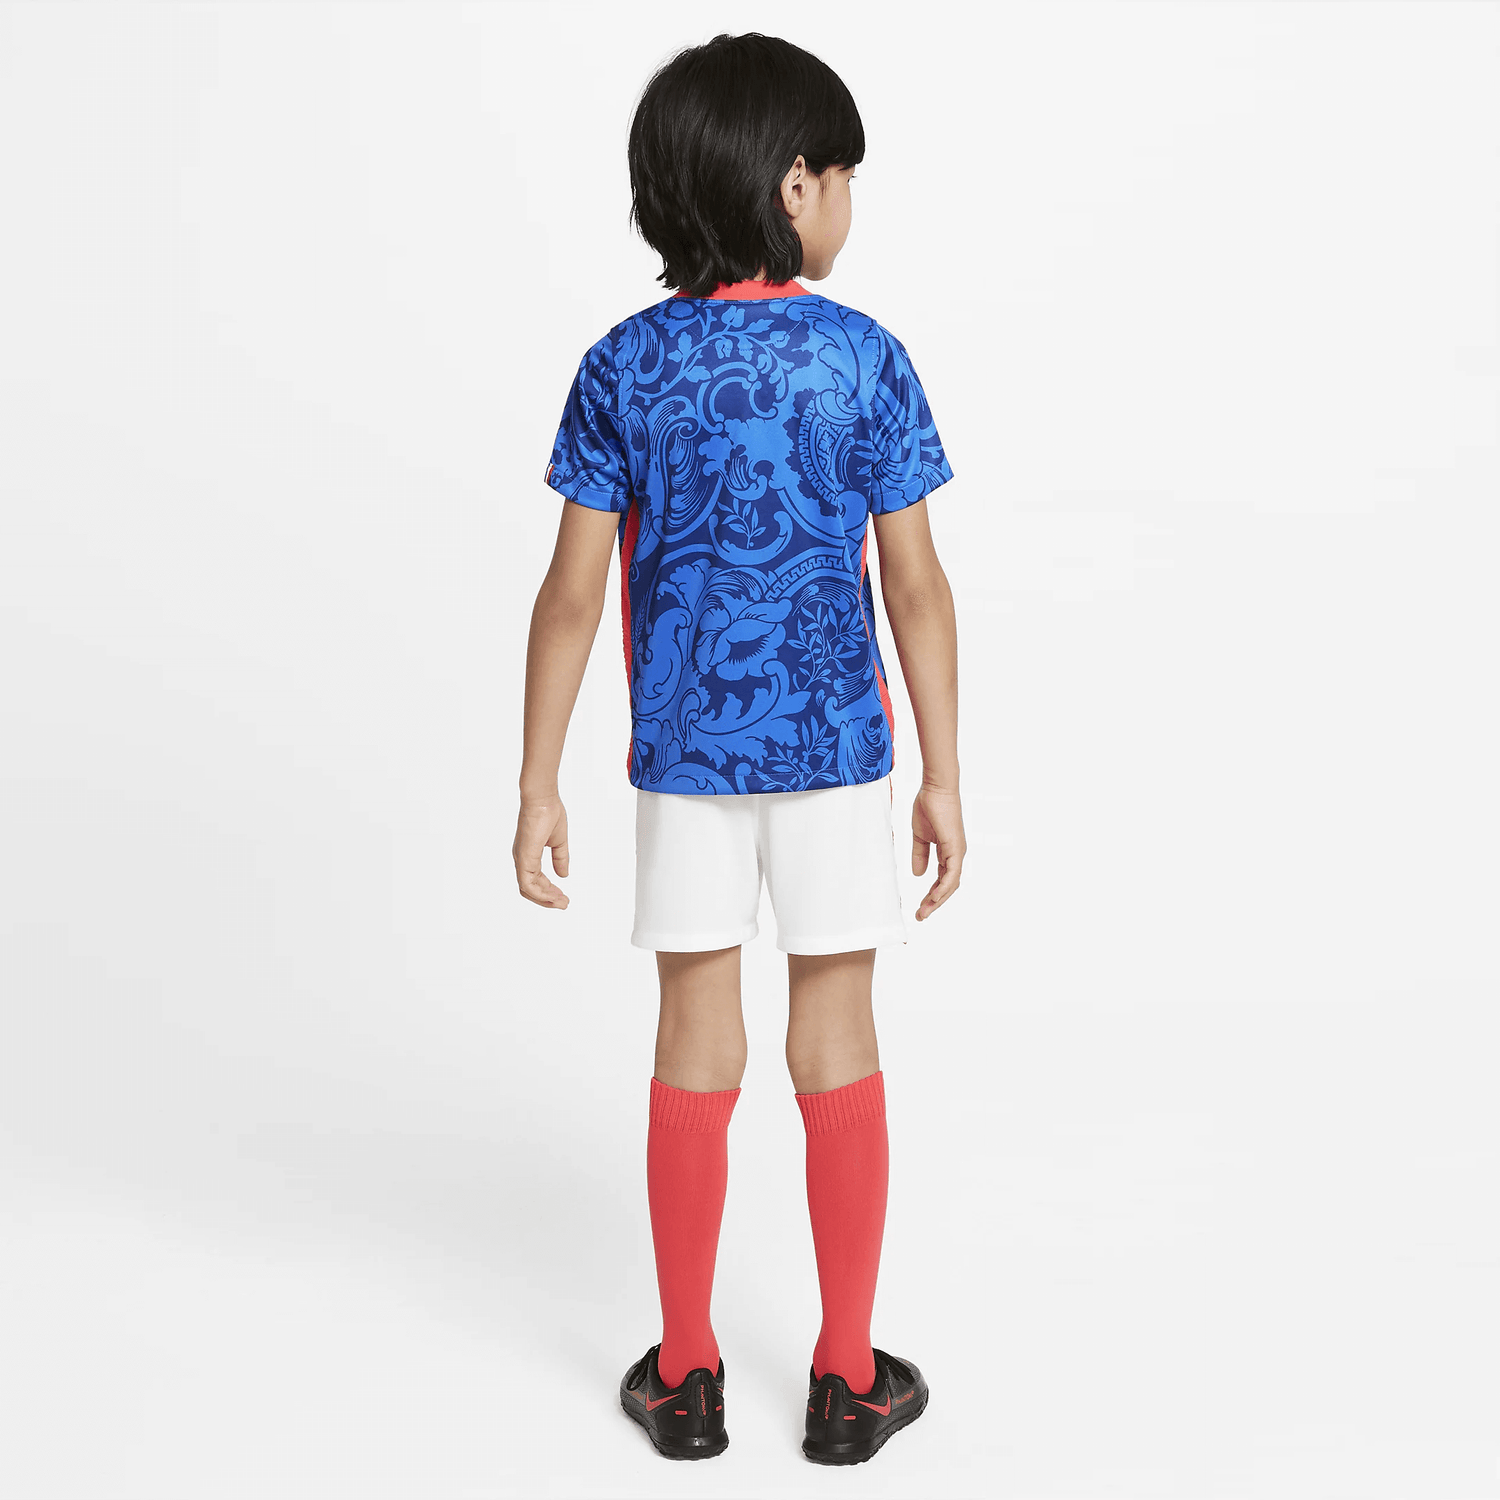 Nike 2022 France Kids' Mini Kit - Blue-White (Model - Back)